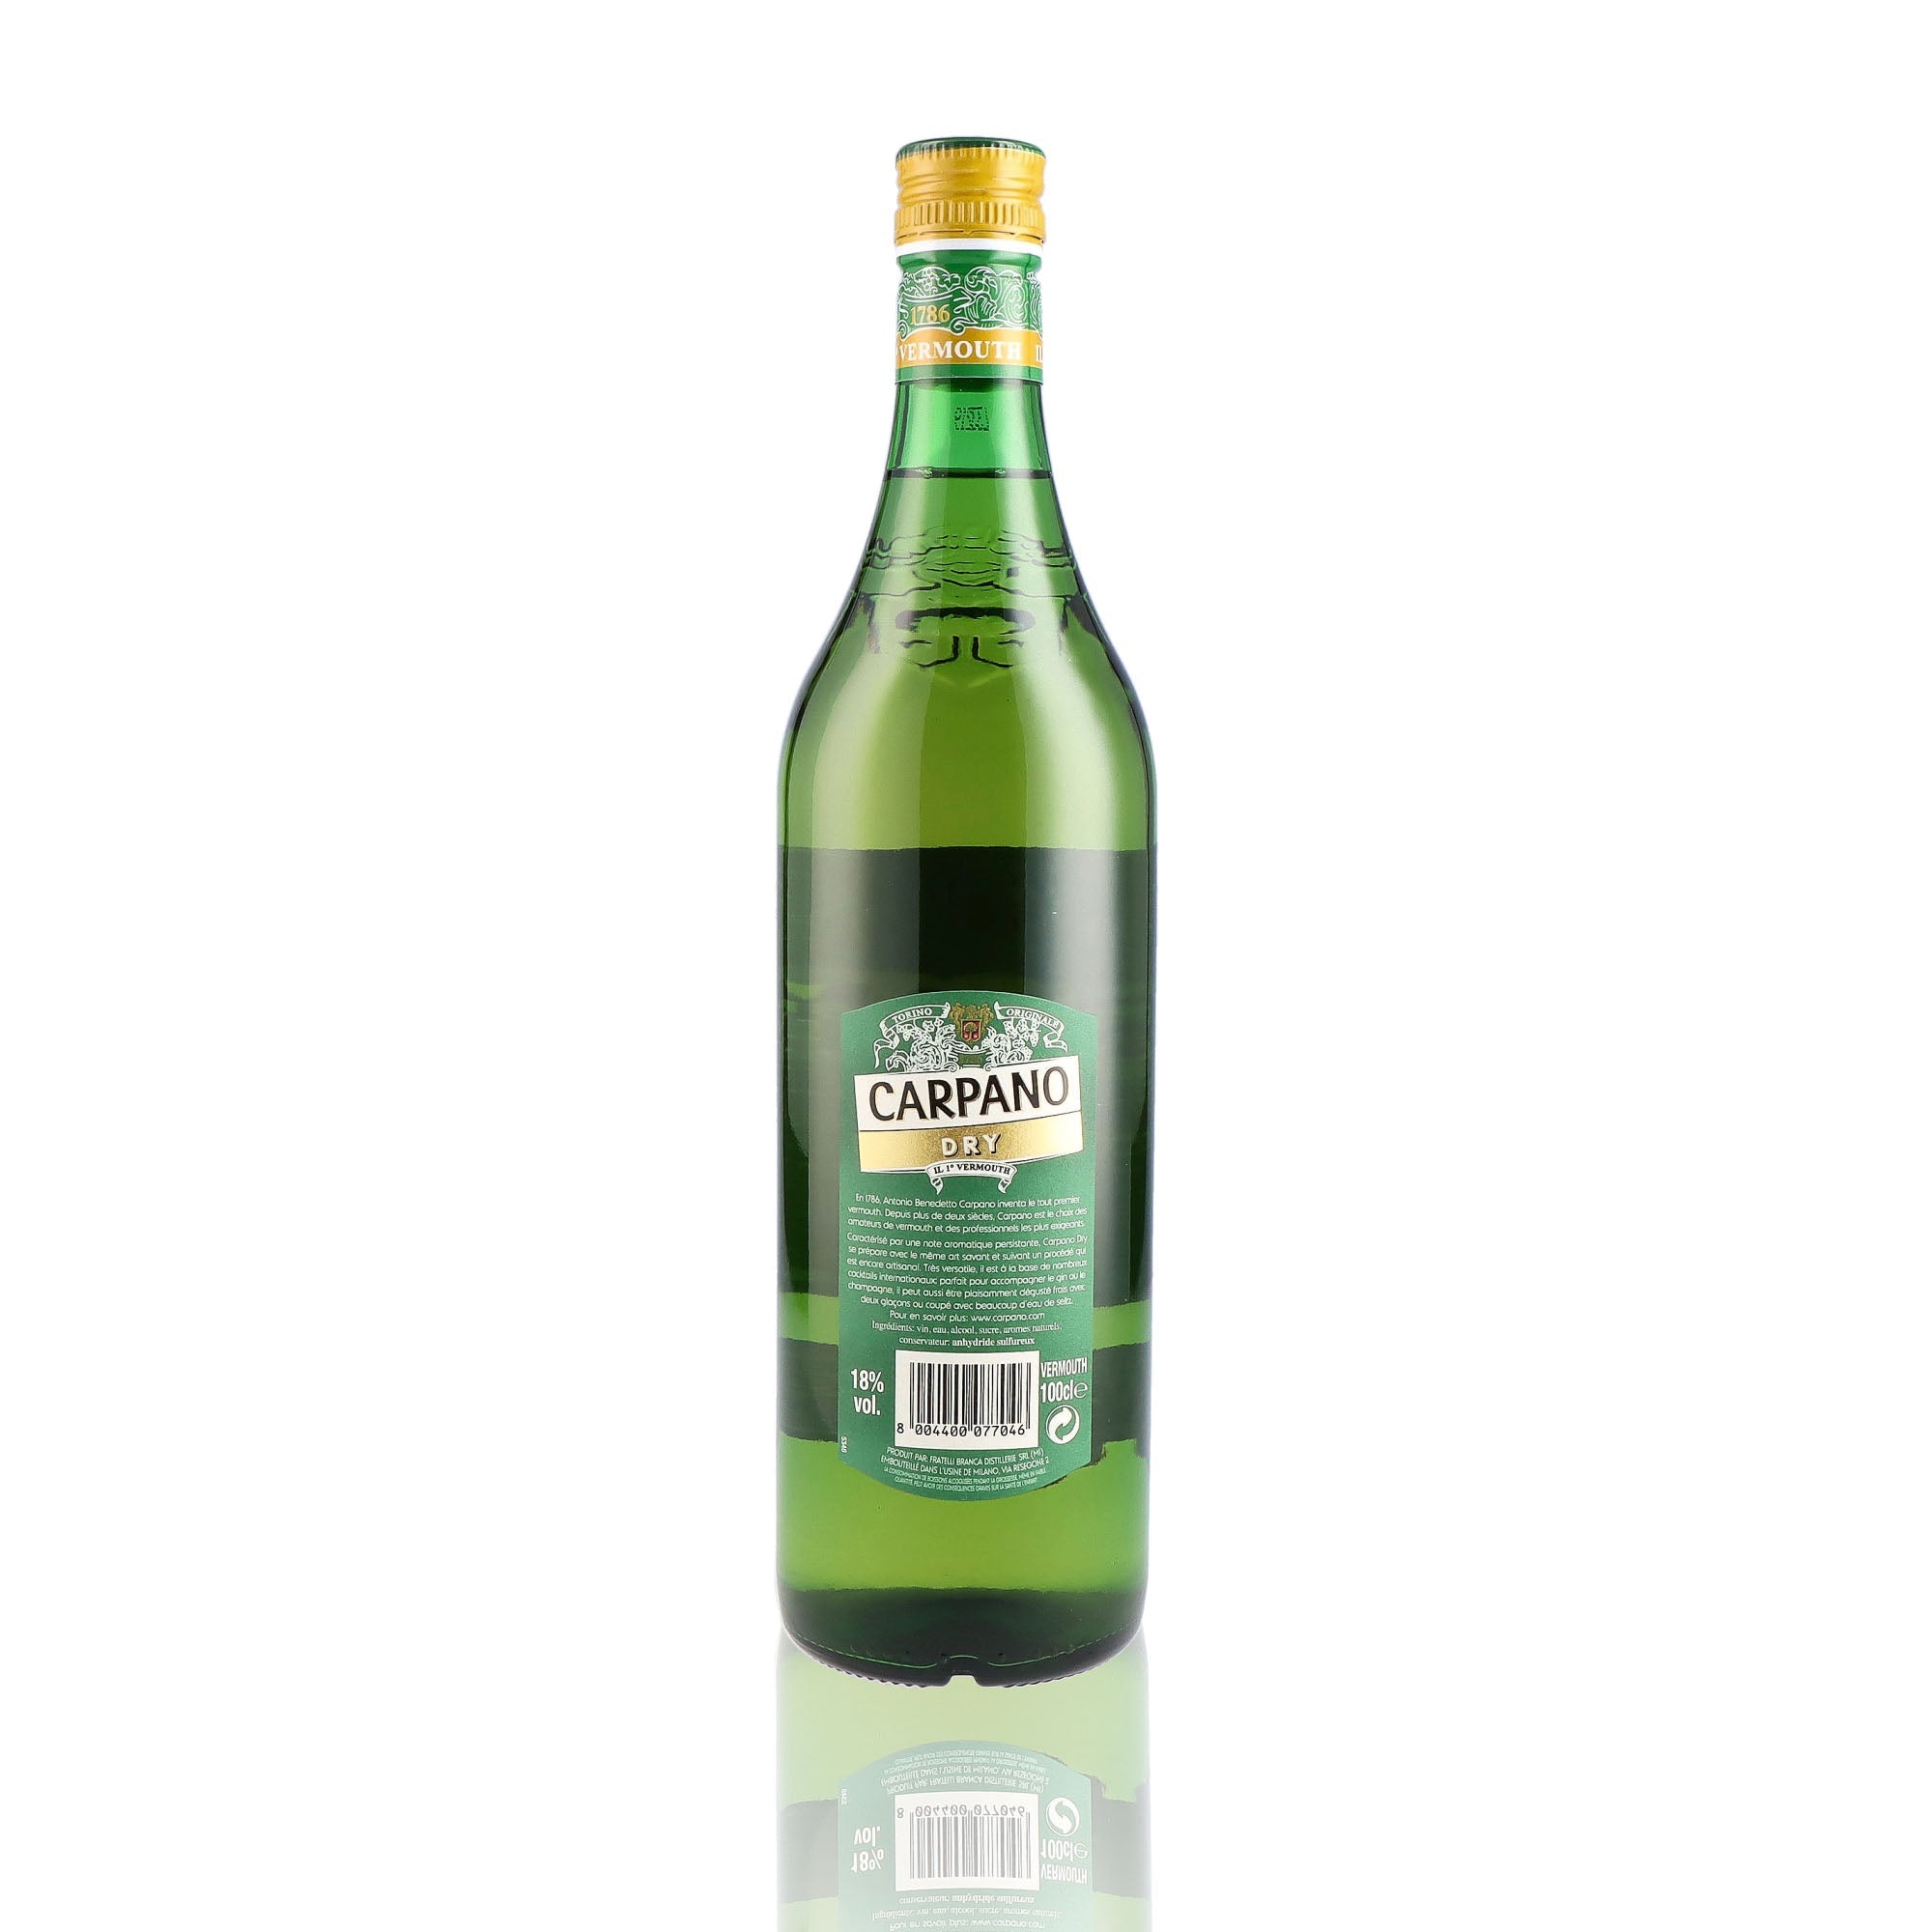 Une bouteille de vermouth, de la marque Carpano, nommée Dry.